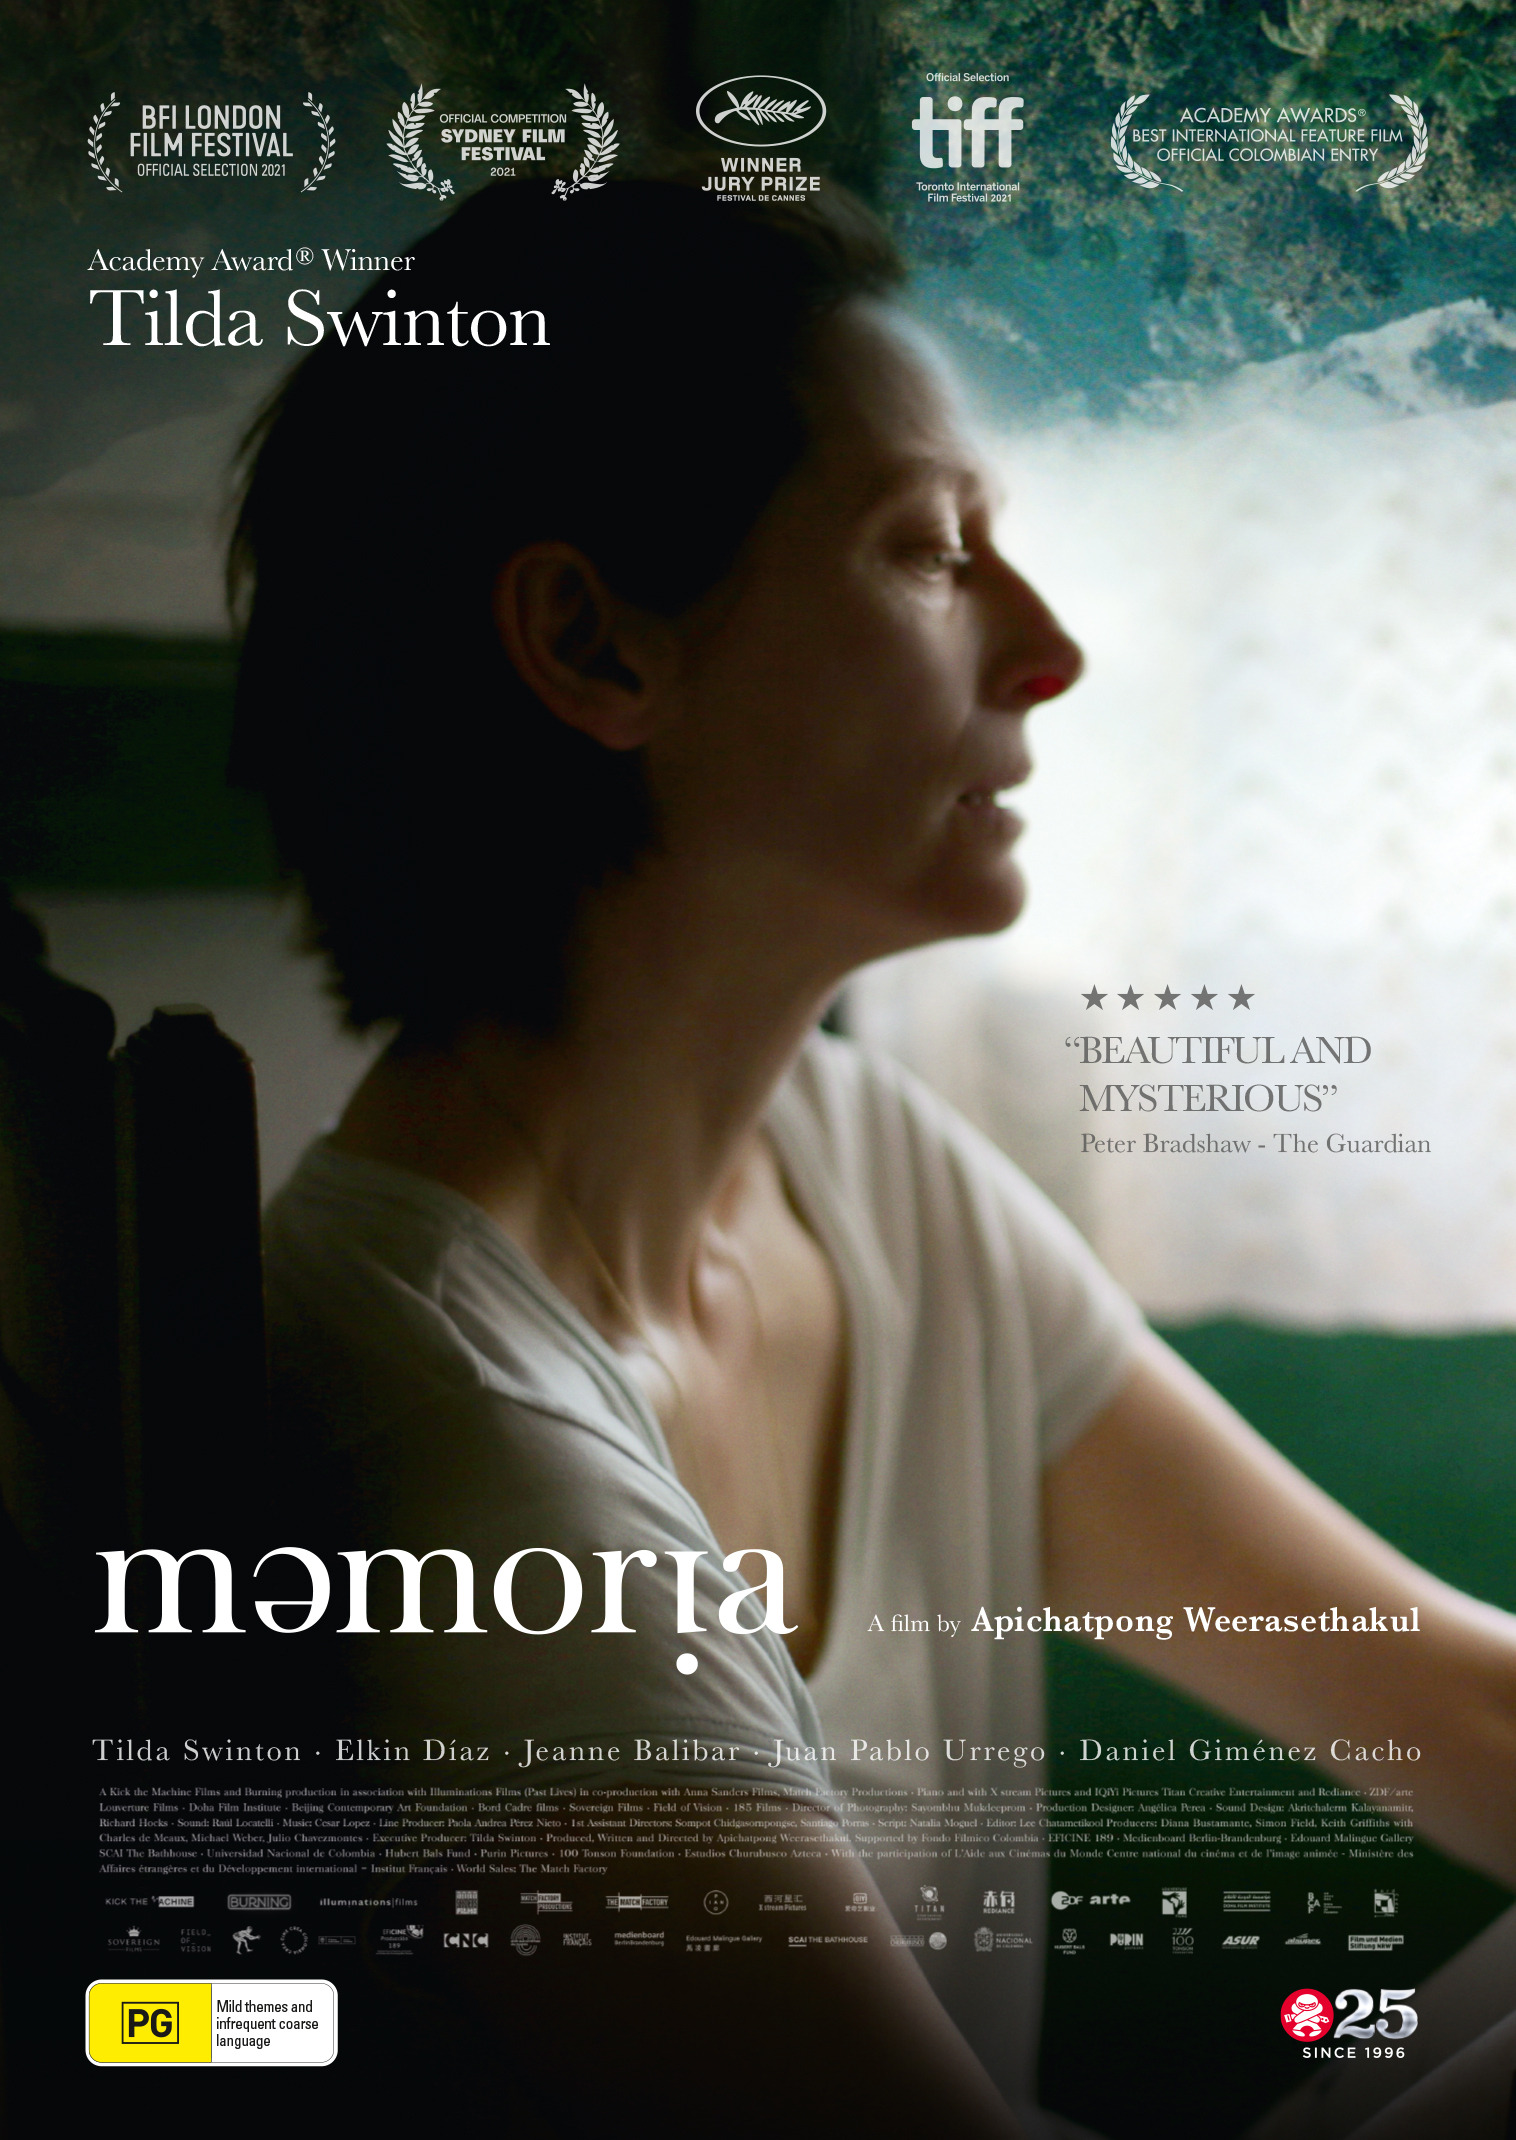 [NEWS] Il trailer del misterioso Memoria con Tilda Swinton